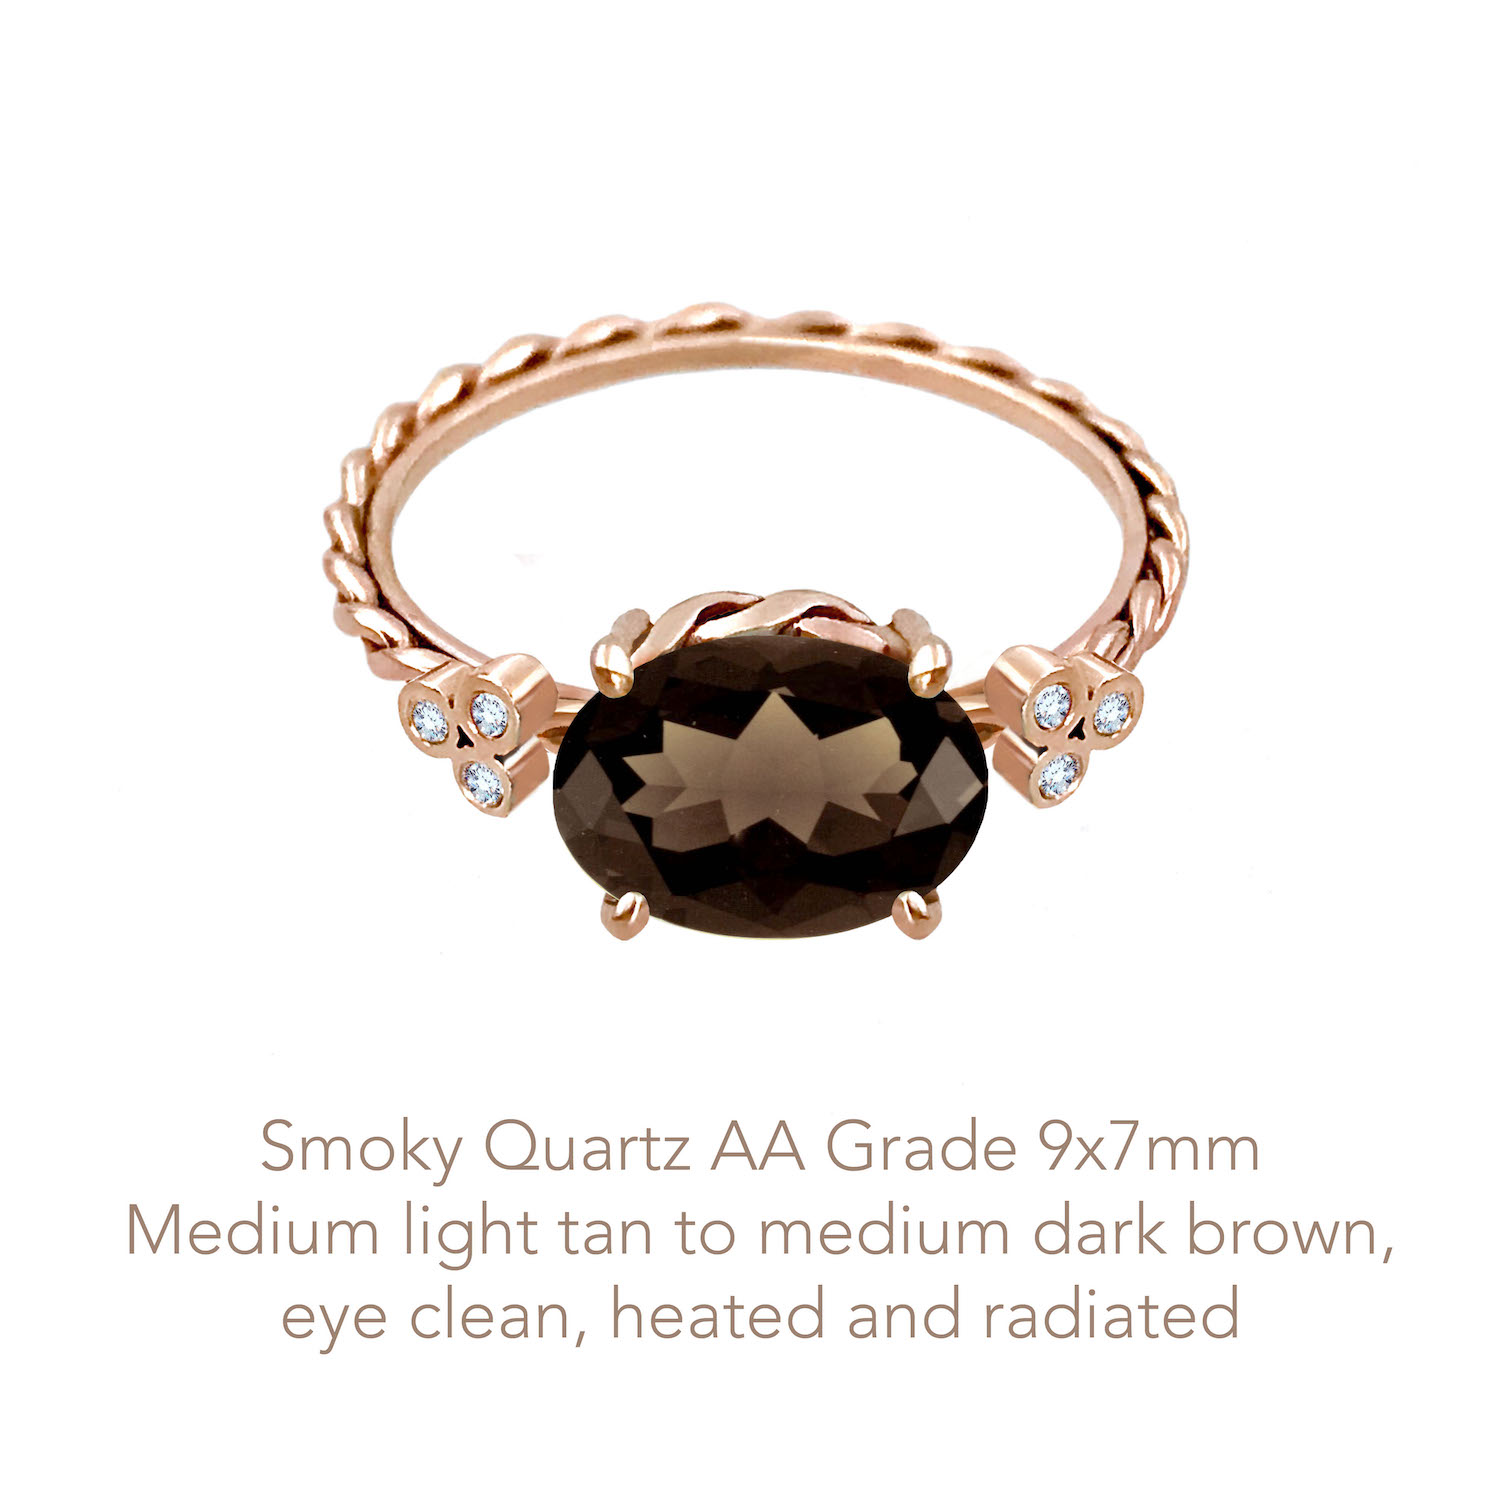 Quartz Smoky AA 9x7